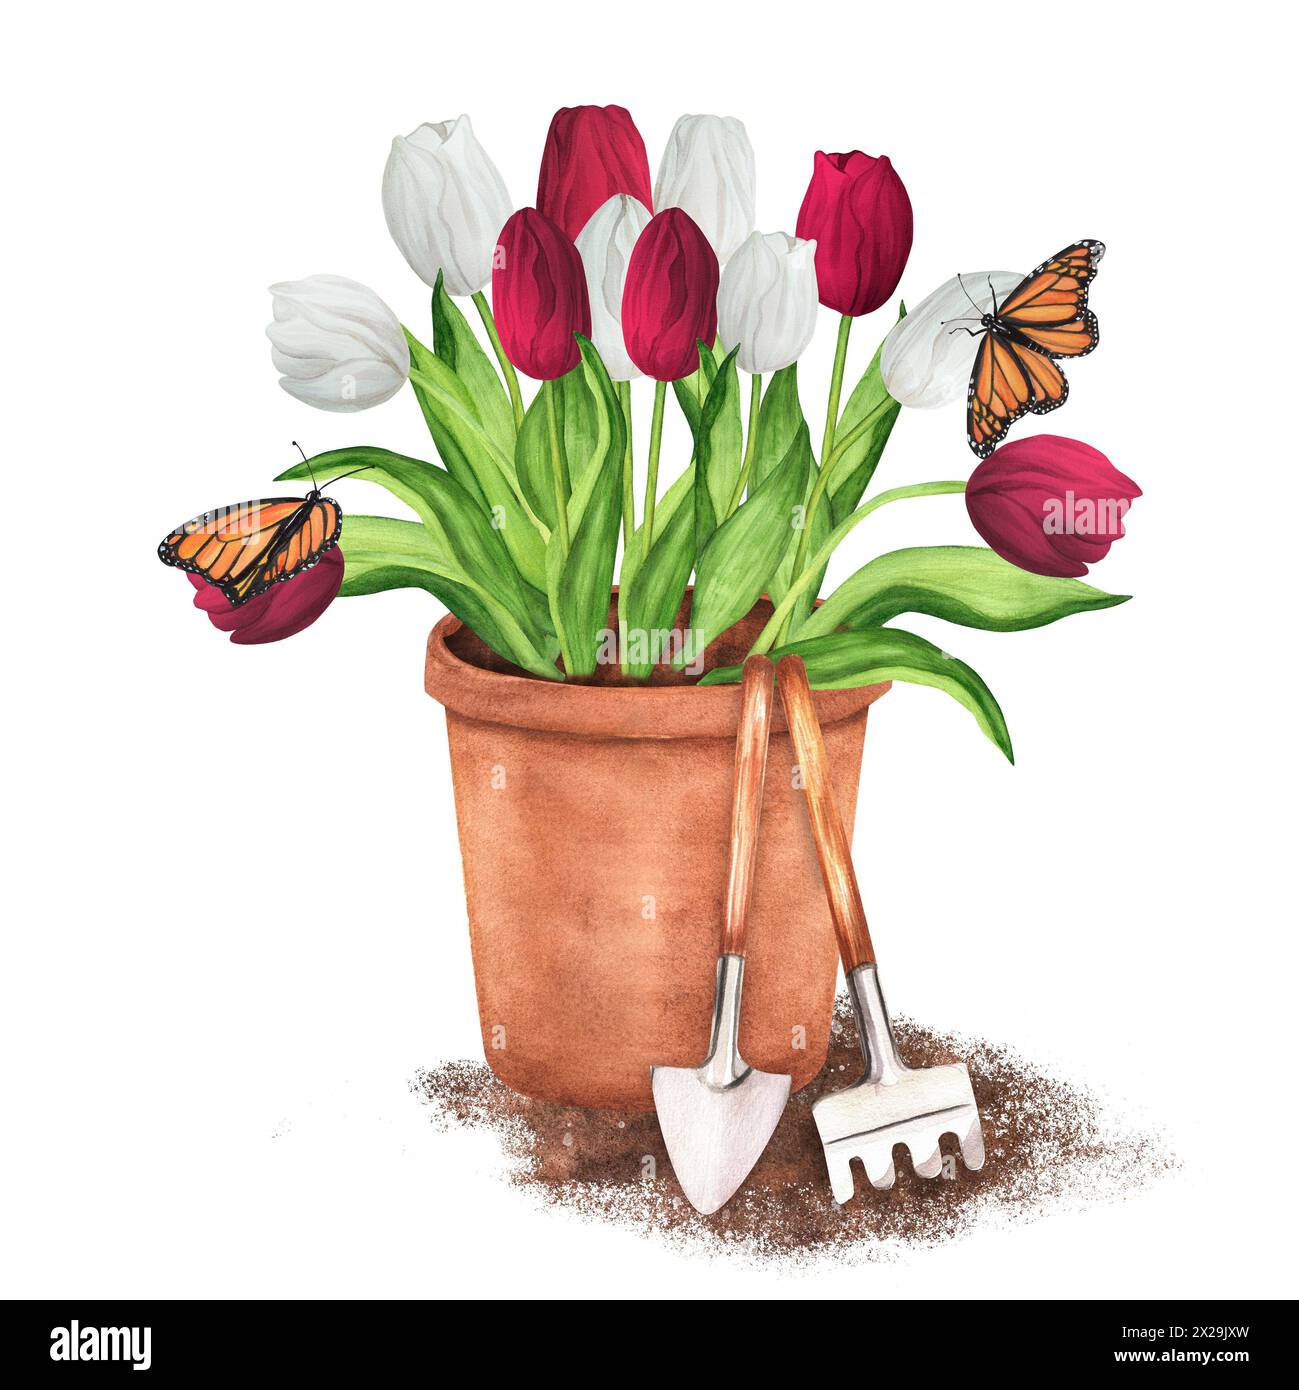 Handgezeichnete Aquarellillustration. Terrakotta-Blumentopf mit weißen und roten Tulpen und Schmetterlingen. Gartentopf mit Gartengeräten - Rechen und Kelle Stockfoto